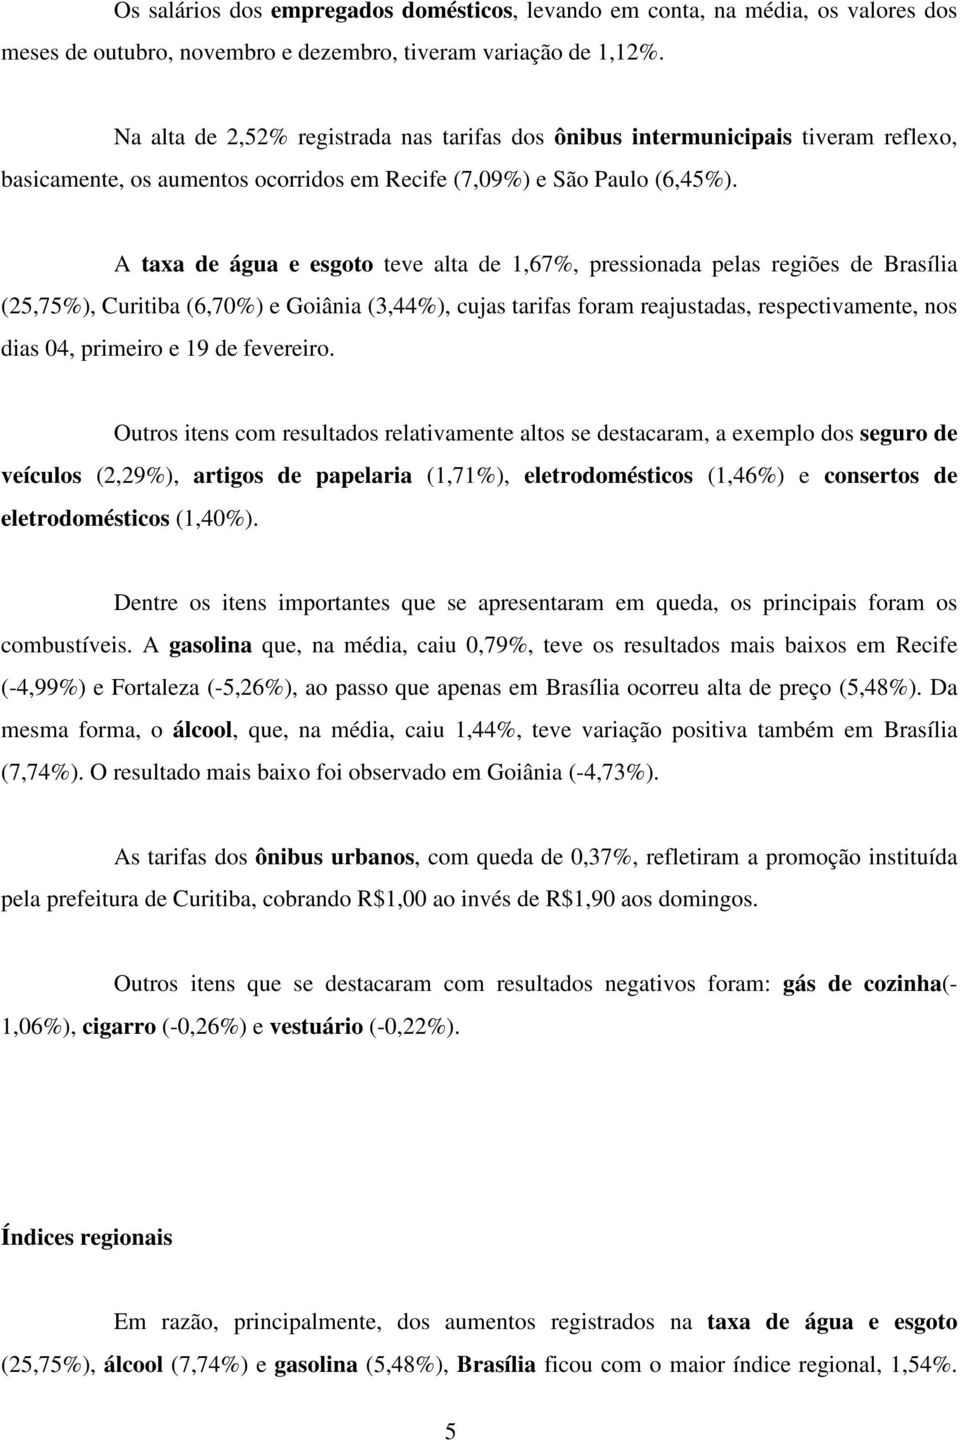 A taxa de água e esgoto teve alta de 1,67%, pressionada pelas regiões de Brasília (25,75%), Curitiba (6,70%) e Goiânia (3,44%), cujas tarifas foram reajustadas, respectivamente, nos dias 04, primeiro